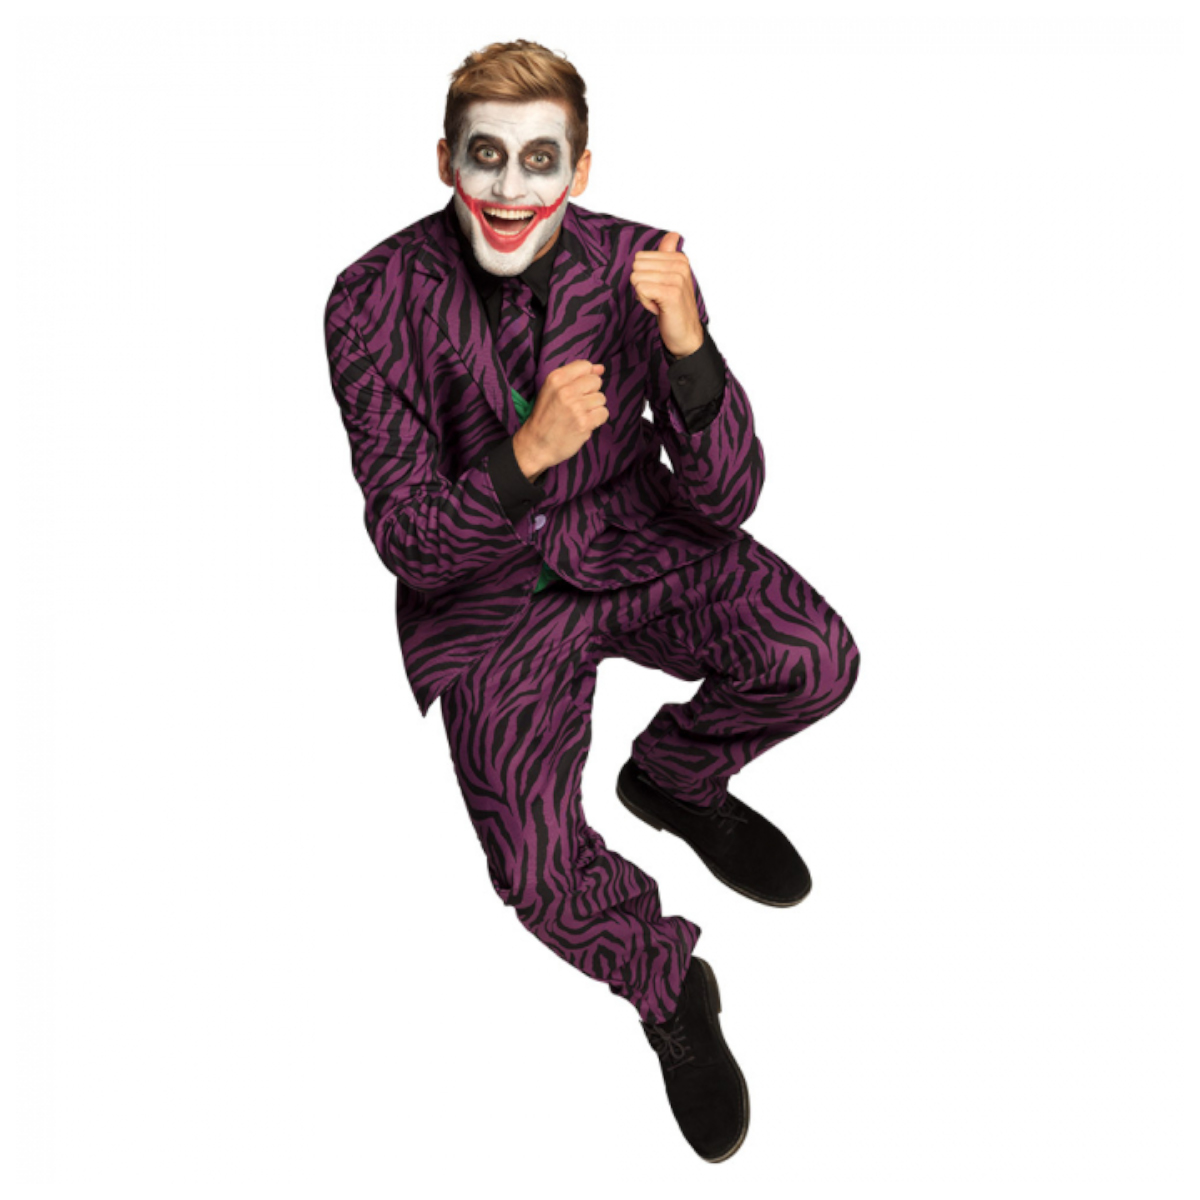 Stijg Monografie Broederschap The Joker kostuum online kopen? - Partytrader